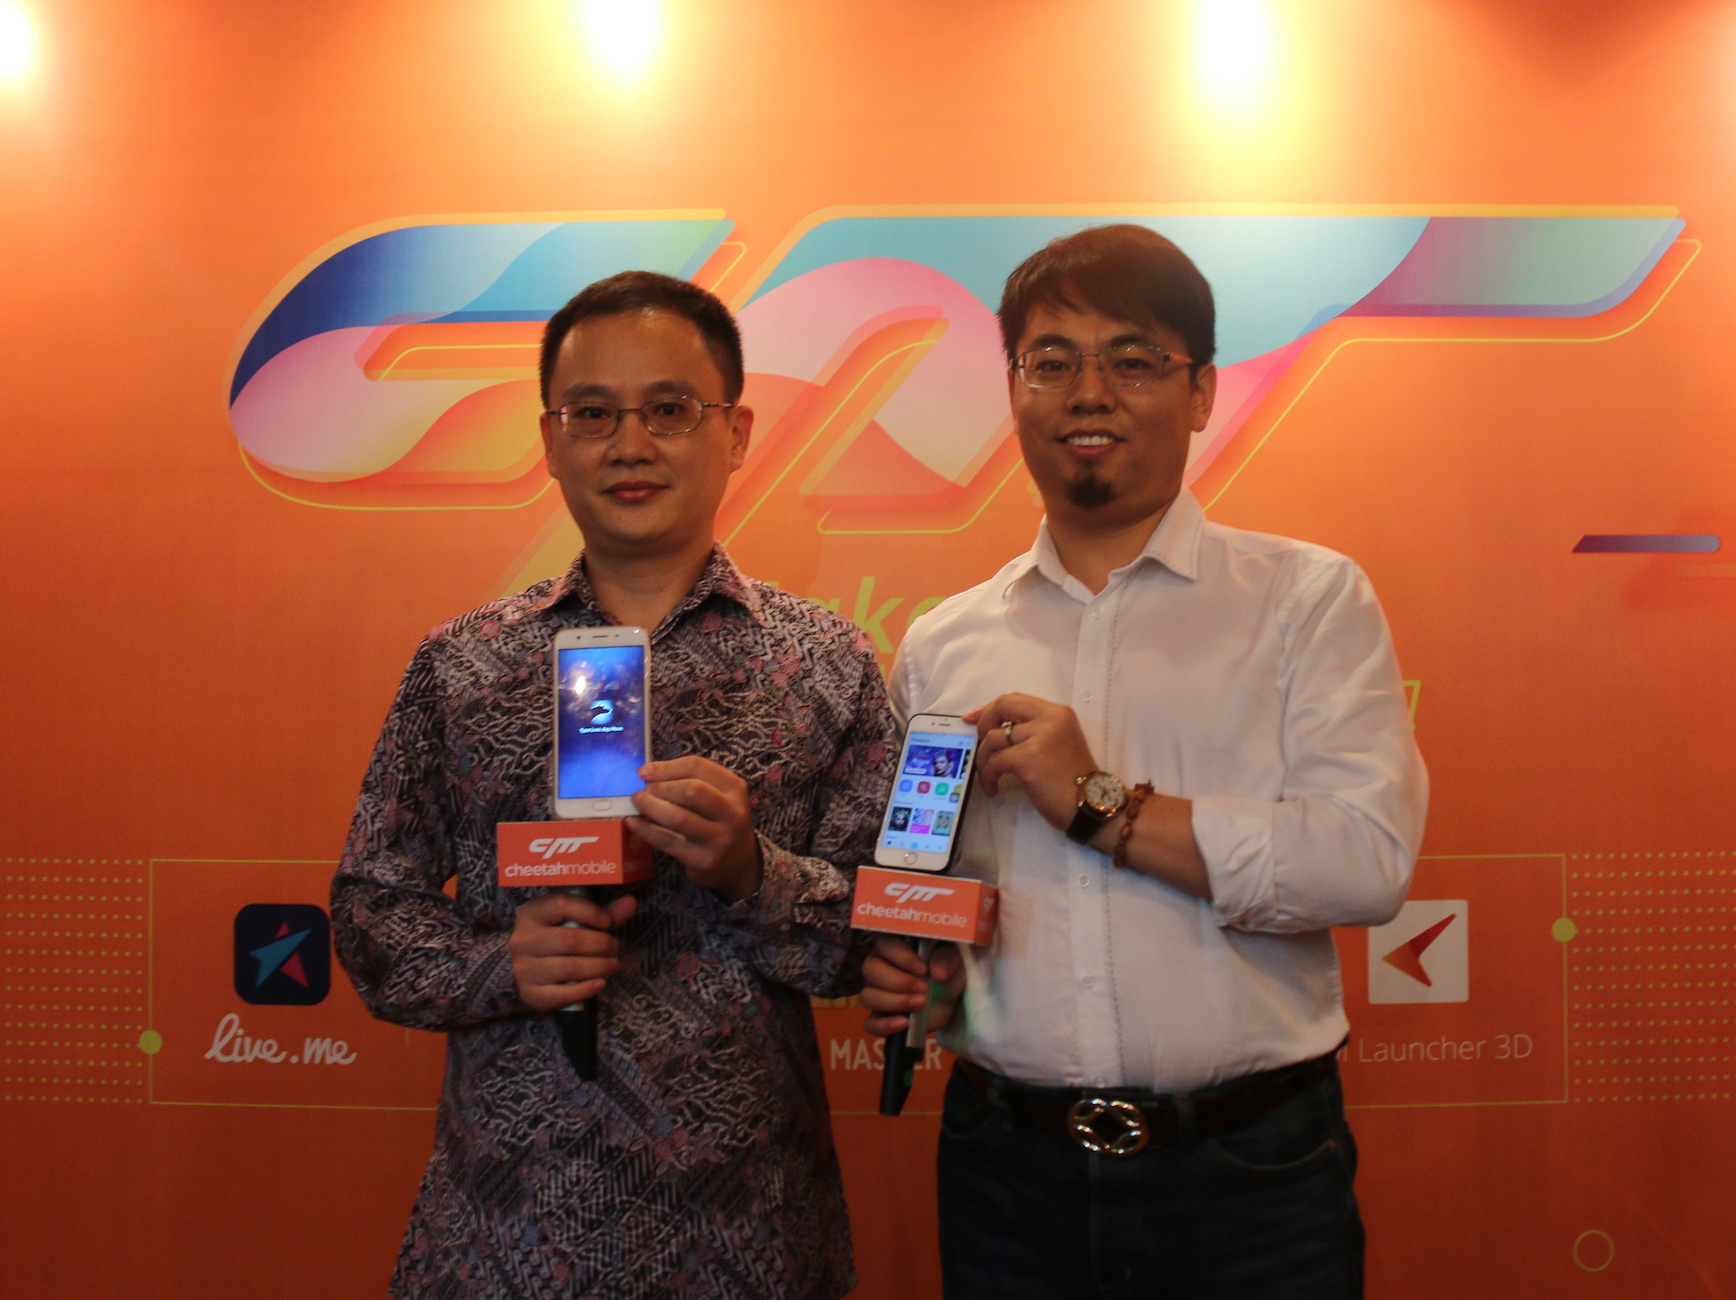 Johnny Li, Vice President of Cheetah Mobile, dan Leslie Lin, Head of Global App Growth Cheetah Mobile, mengumumkan misi perusahaan untuk “Membuat Dunia Lebih Cerdas” dengan teknologi kecerdasan buatan atau artificial intelligence (AI), saat diskusi media hari ini (30/11) di Jakarta.